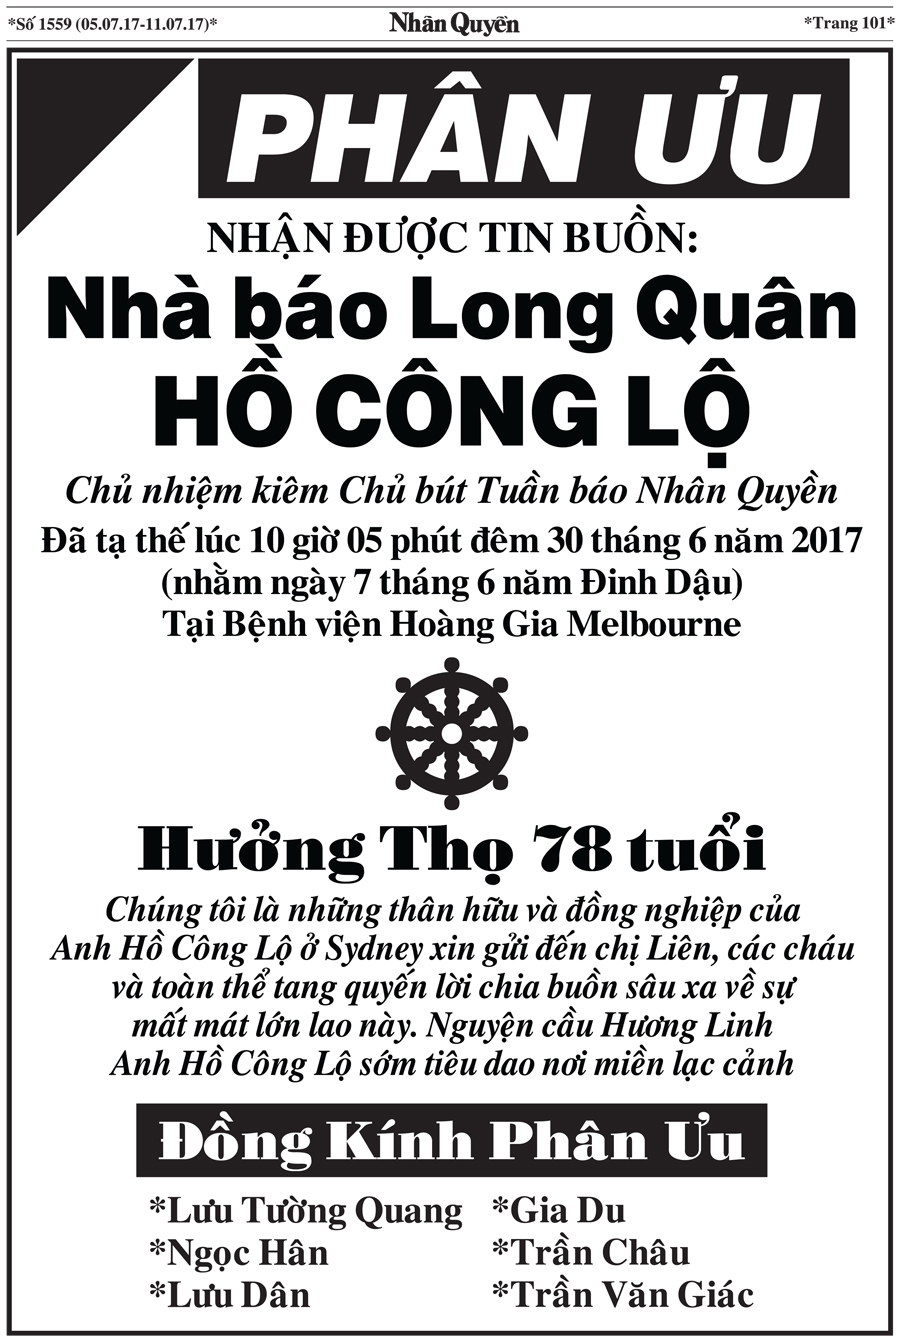 Bao Nhan Quyen SoDac Biet ve Chu But Ho Cong Lo (14)